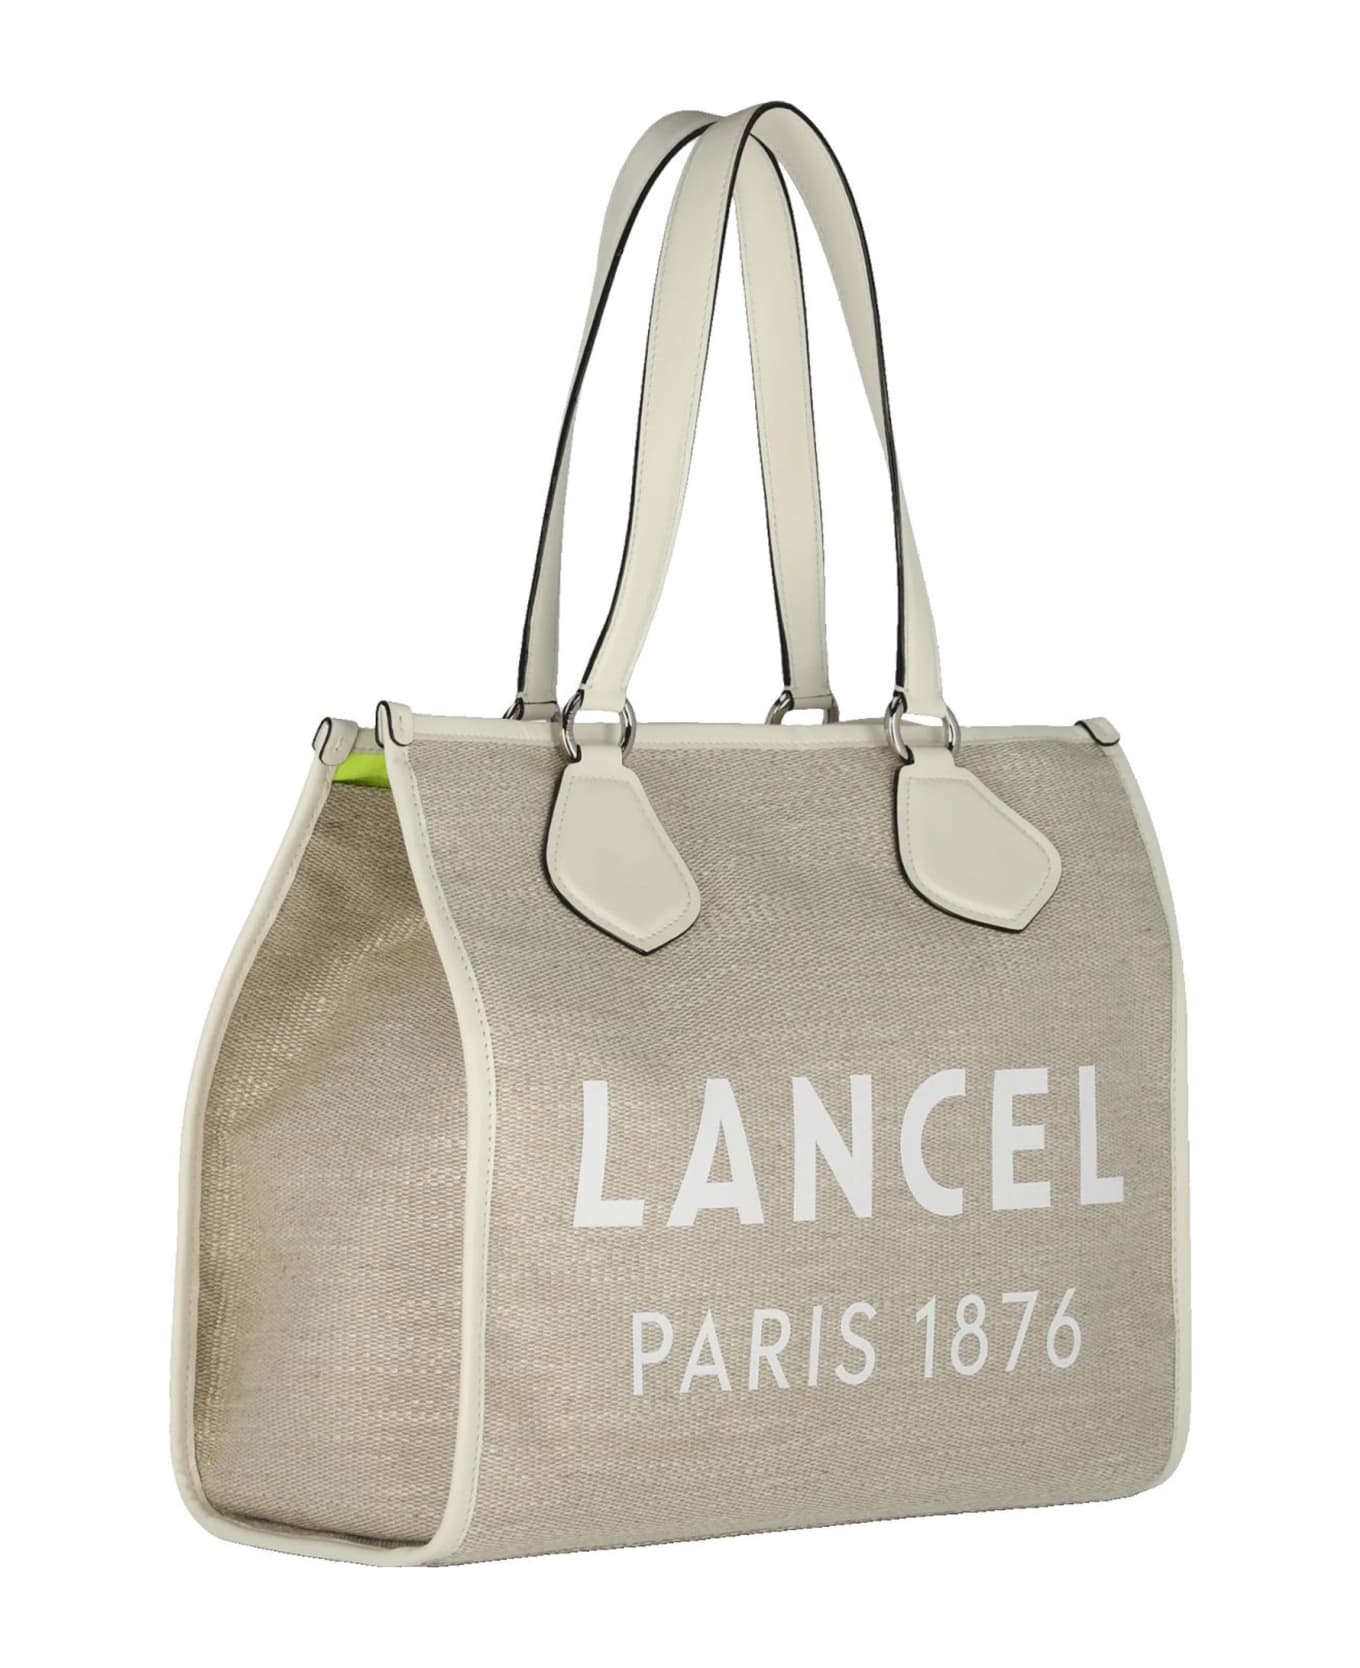 Lancel White Tote Bag - Natural